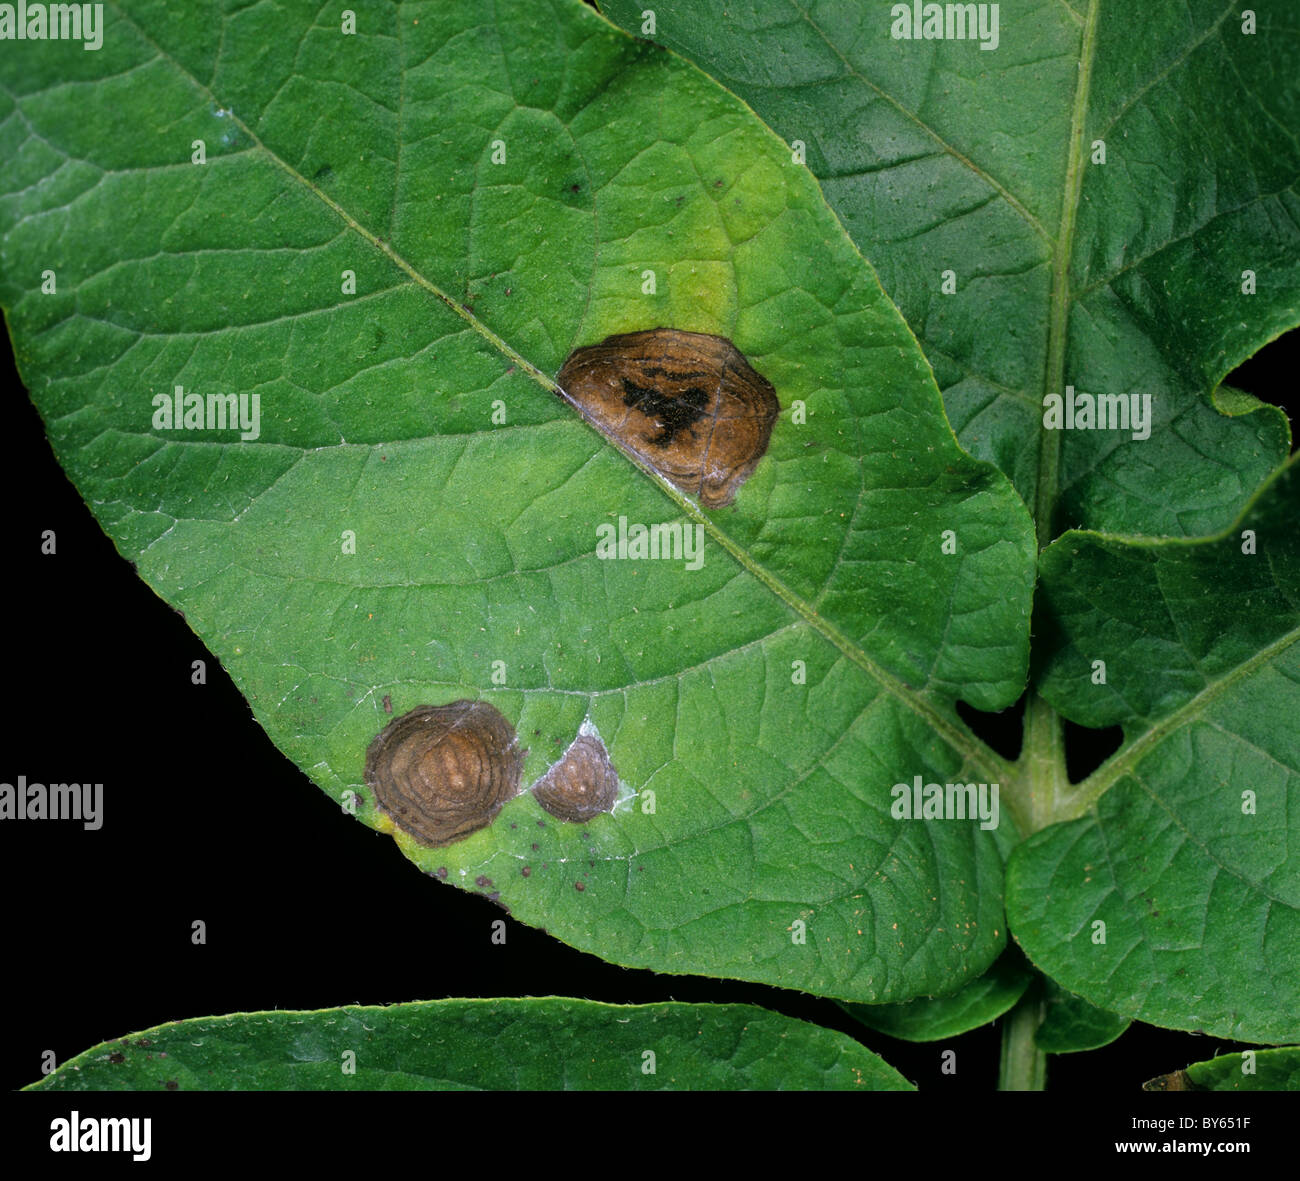 Potato early blight (Alternaria alternata) discreet lesions on a potato leaf Stock Photo